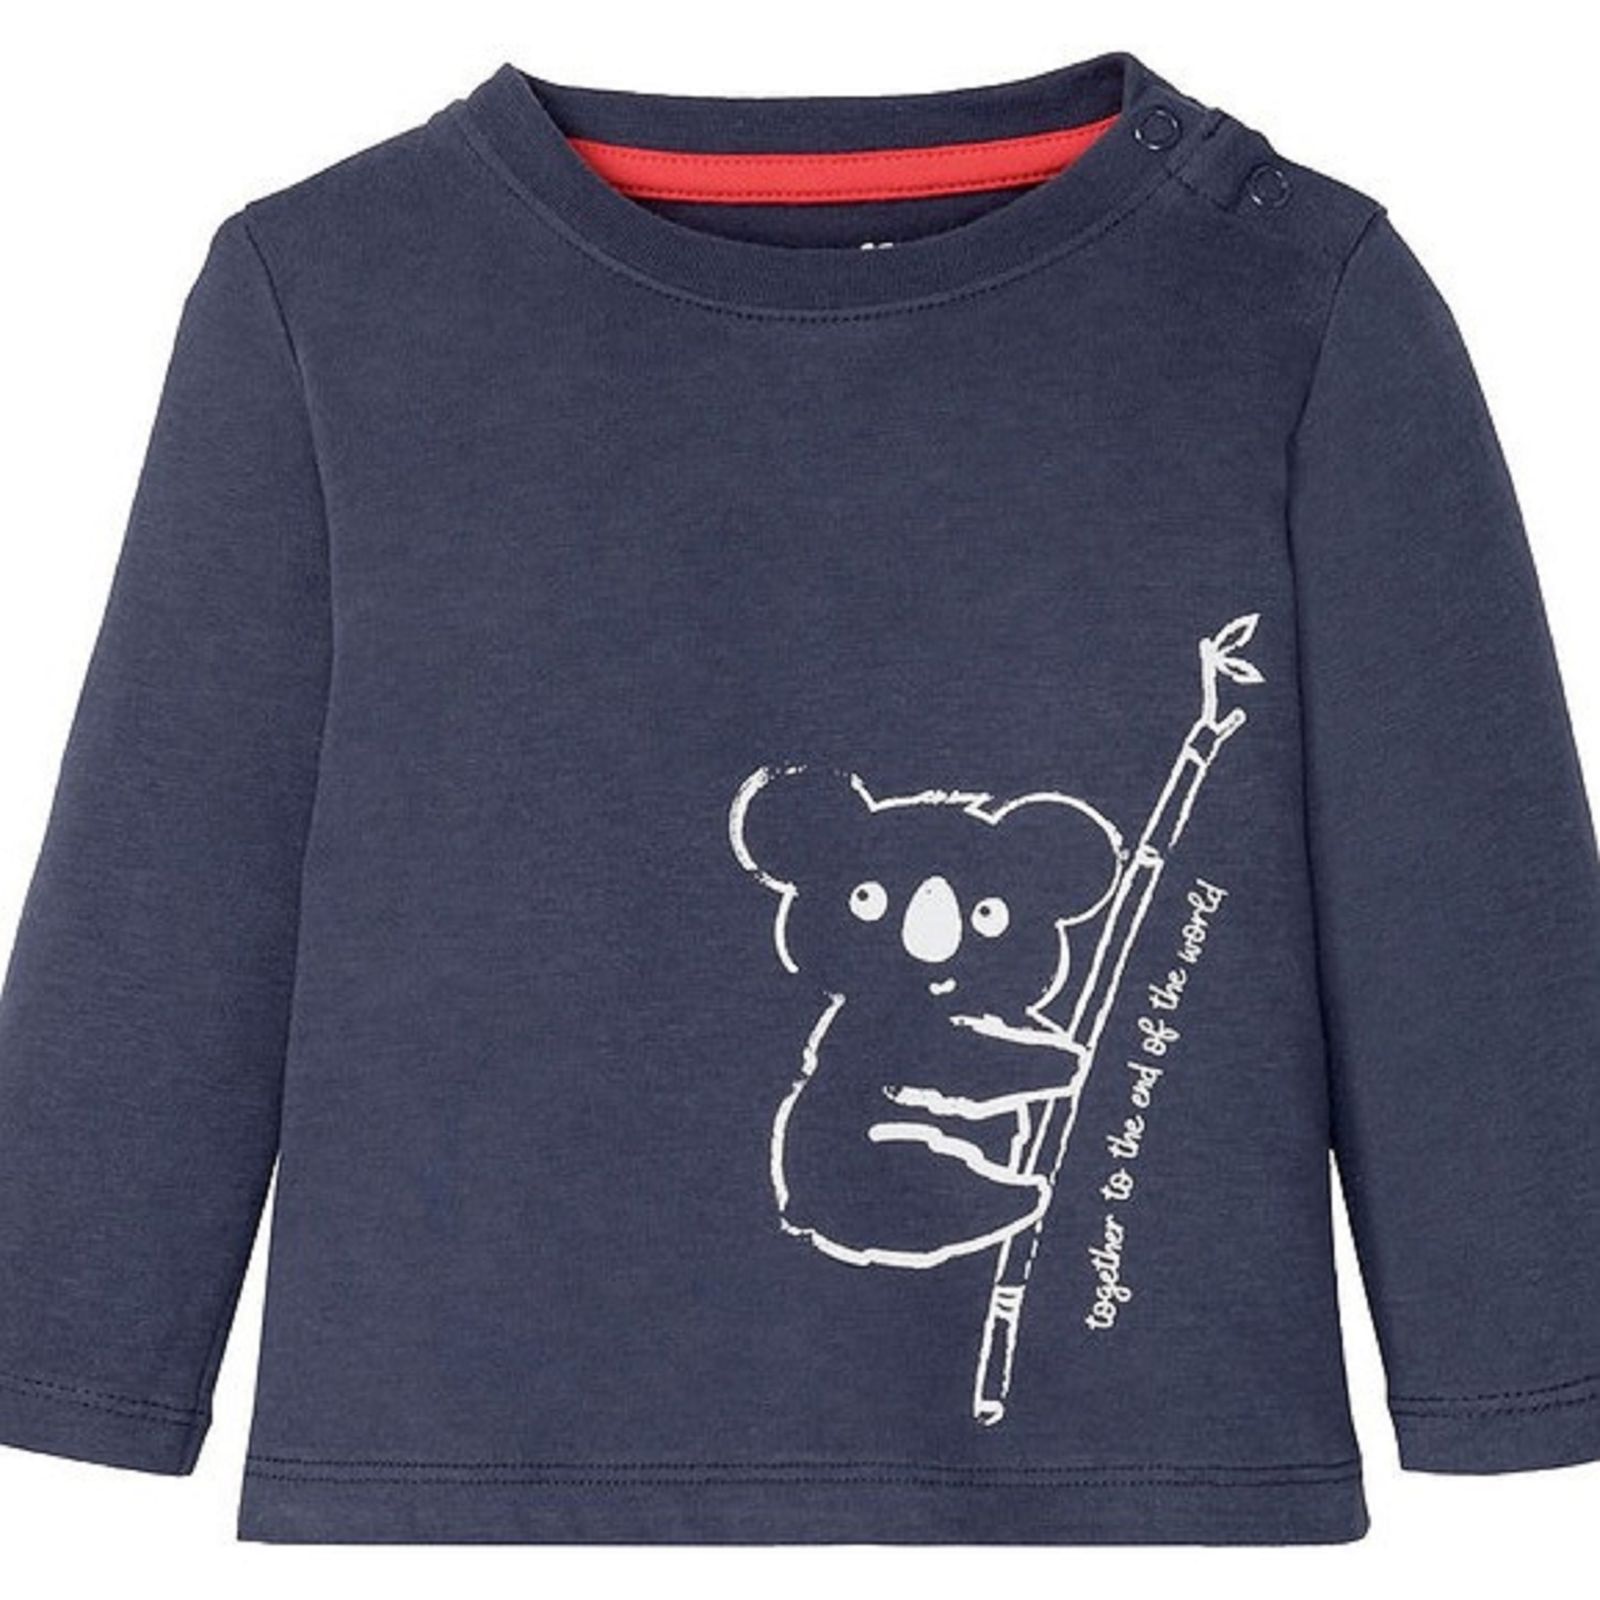 تی شرت آستین بلند نوزادی لوپیلو مدل کوالا بسته 2 عددی -  - 3